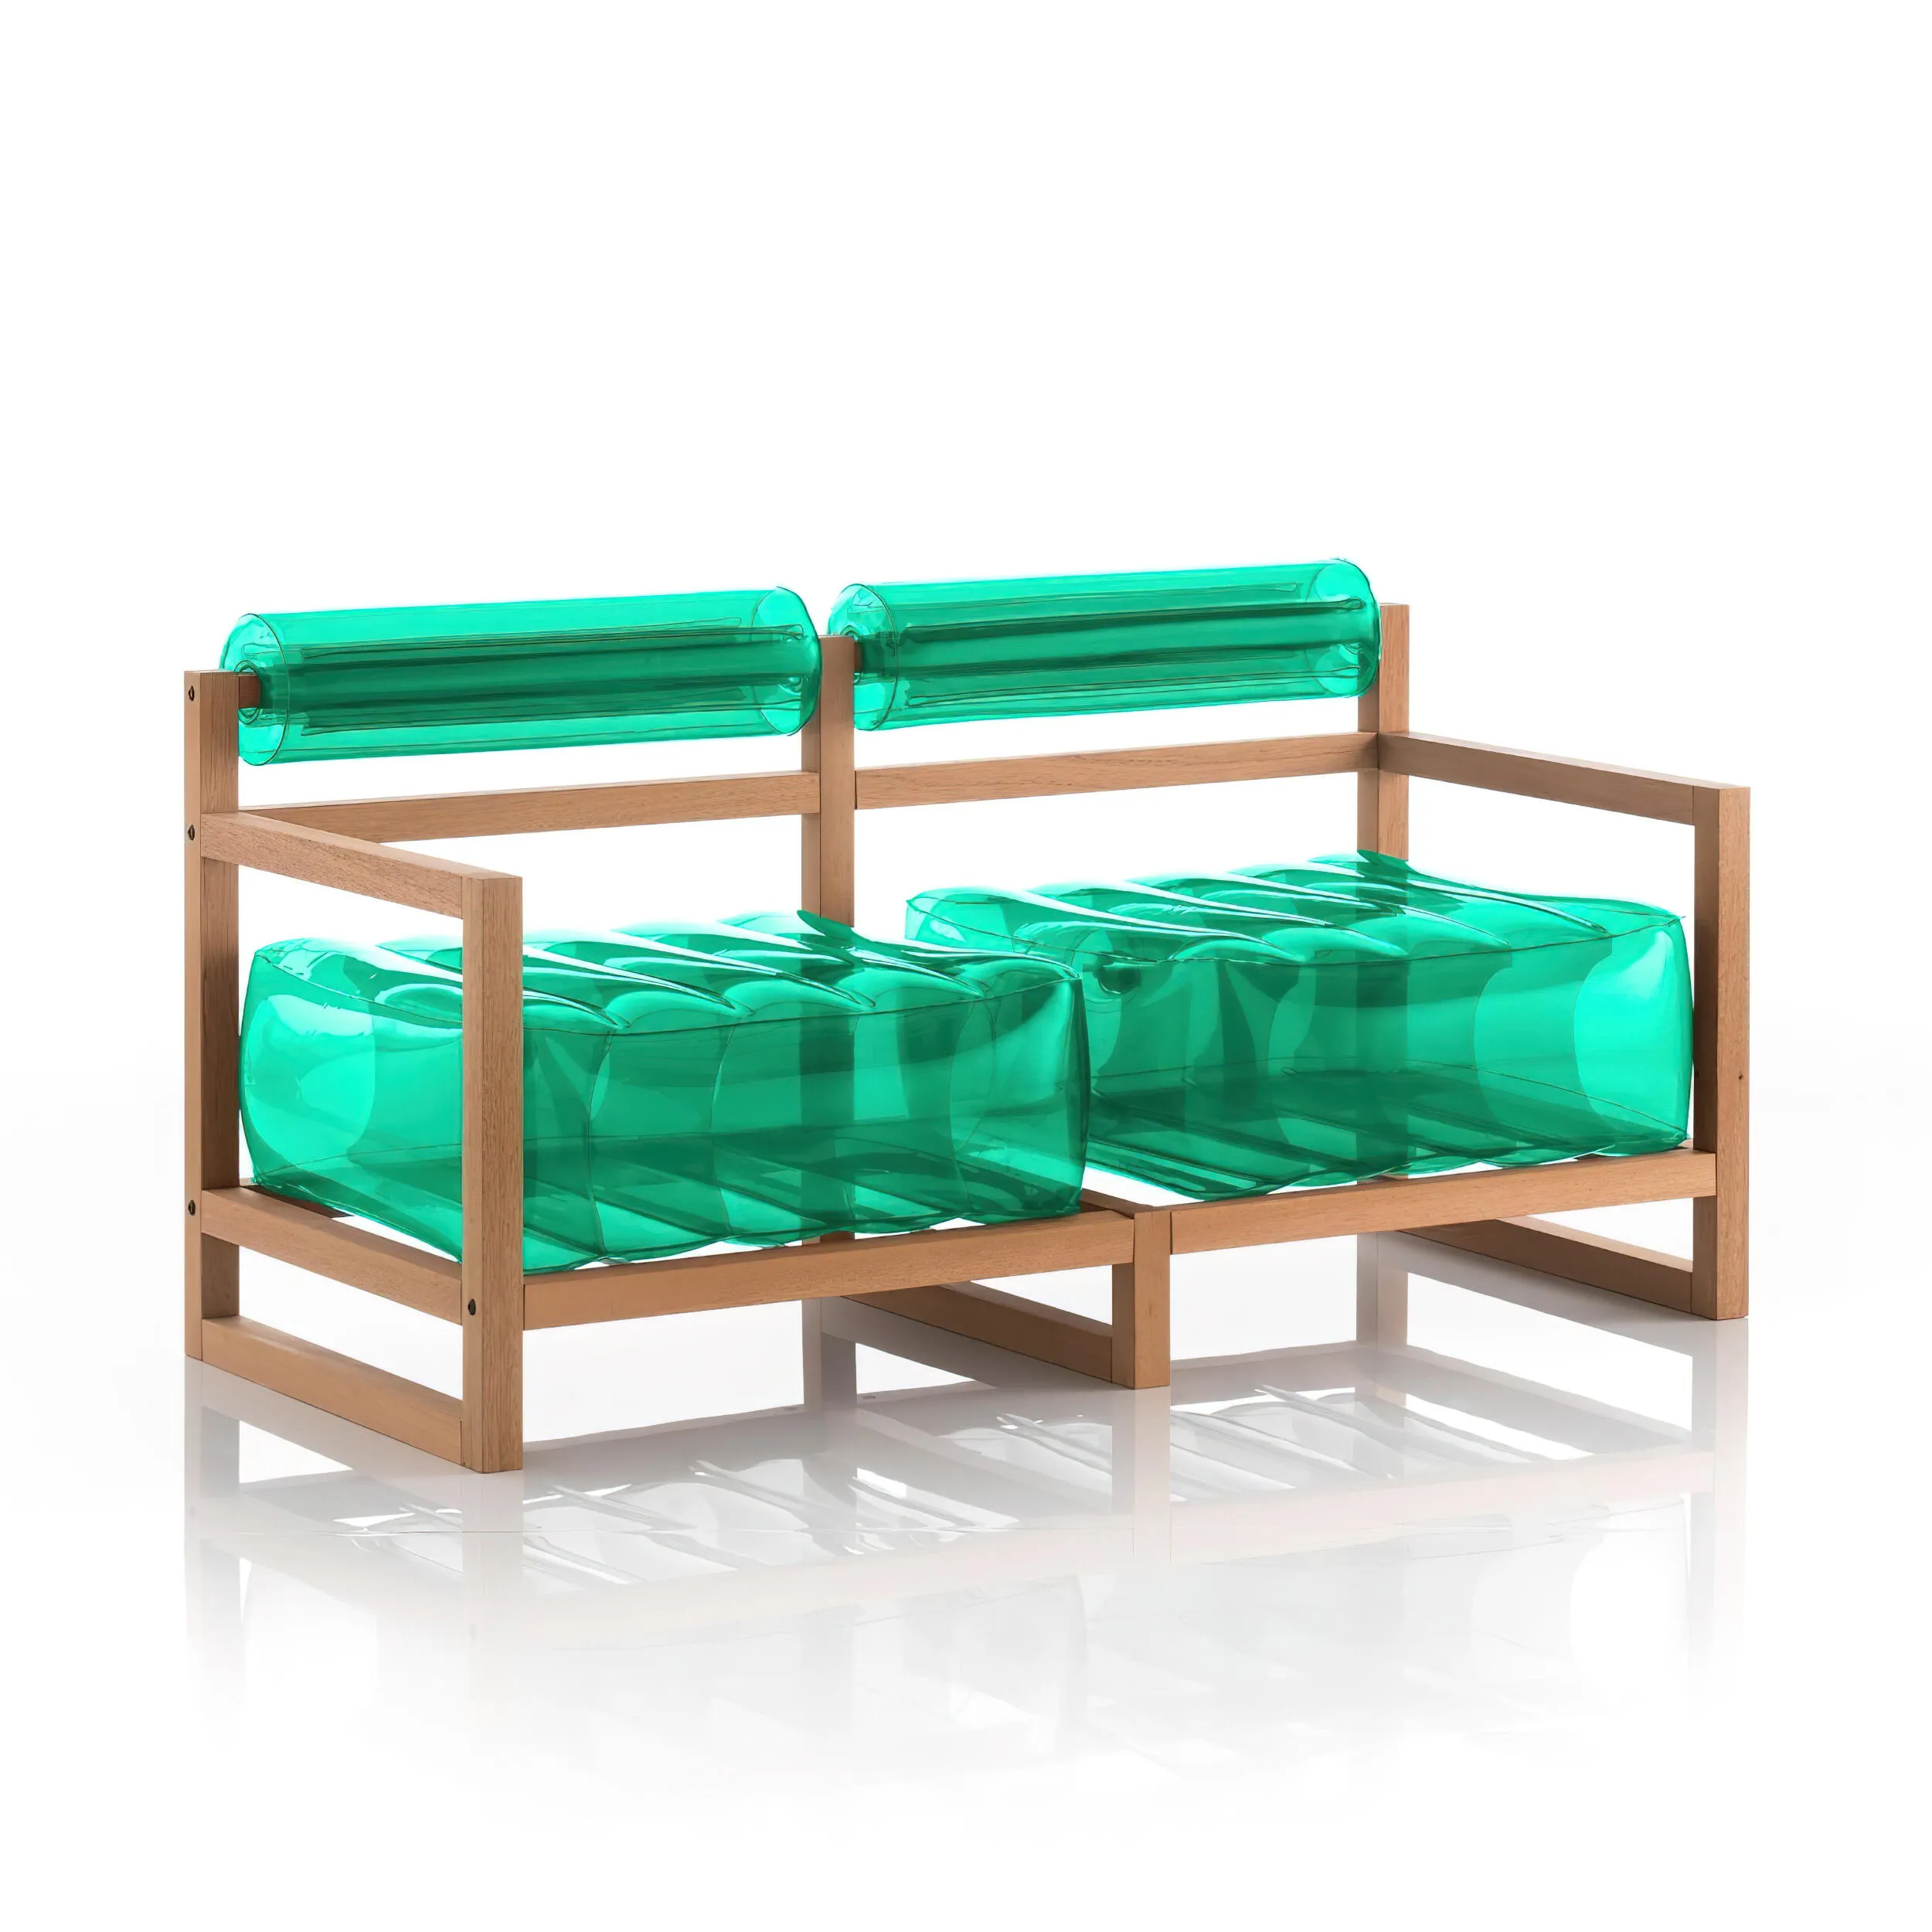 divano Yoko eko struttura in legno naturale, dimensioni 62x191xH70 cm peso 18,7 kg, seduta gonfiabile in TPU colore verde